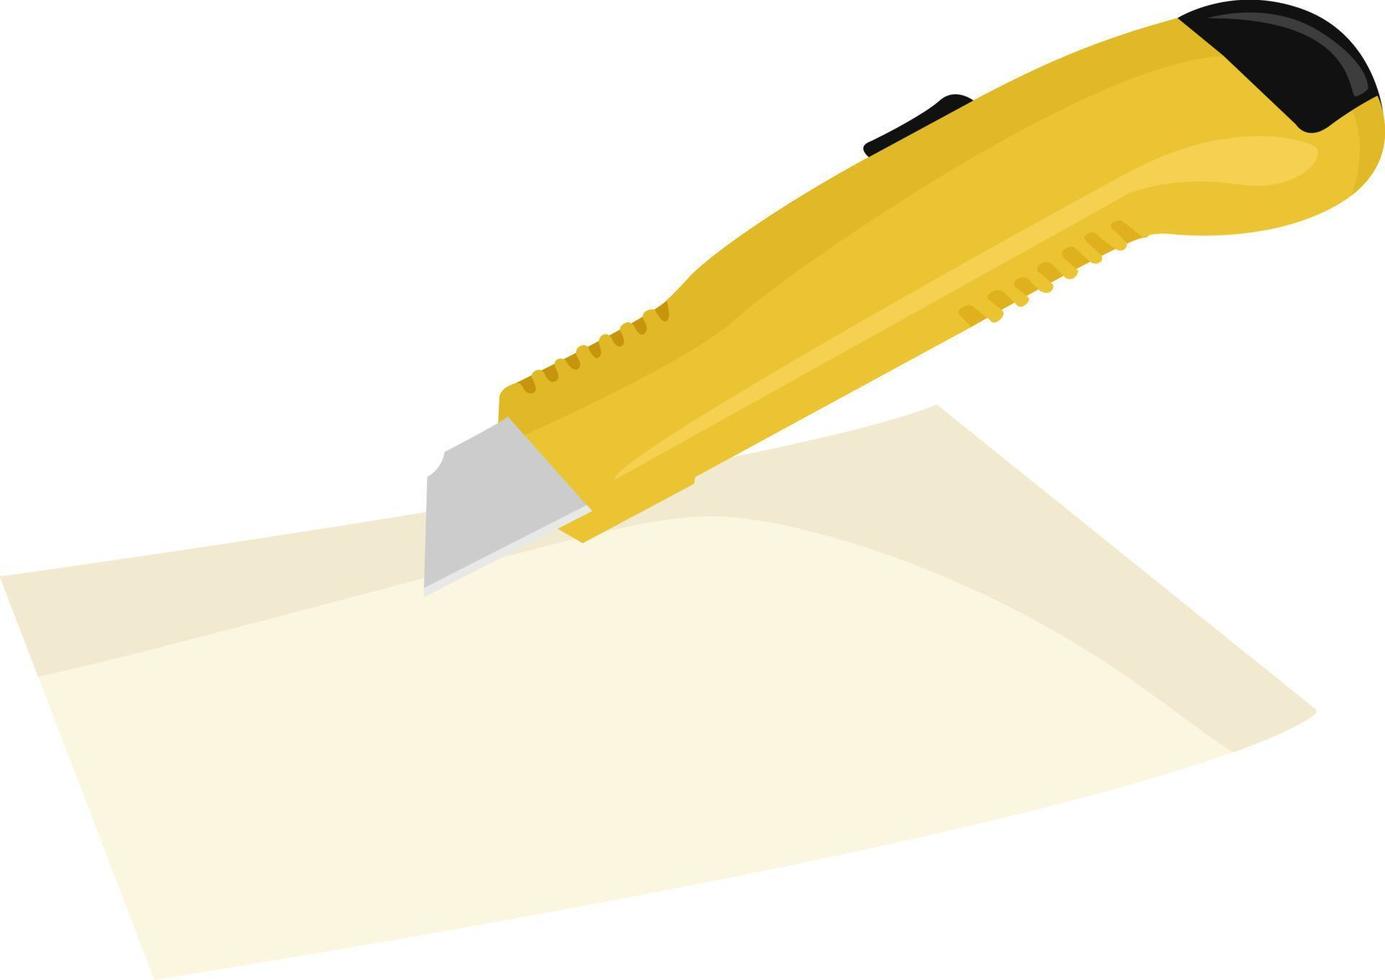 cortador de papel, ilustración, vector sobre fondo blanco